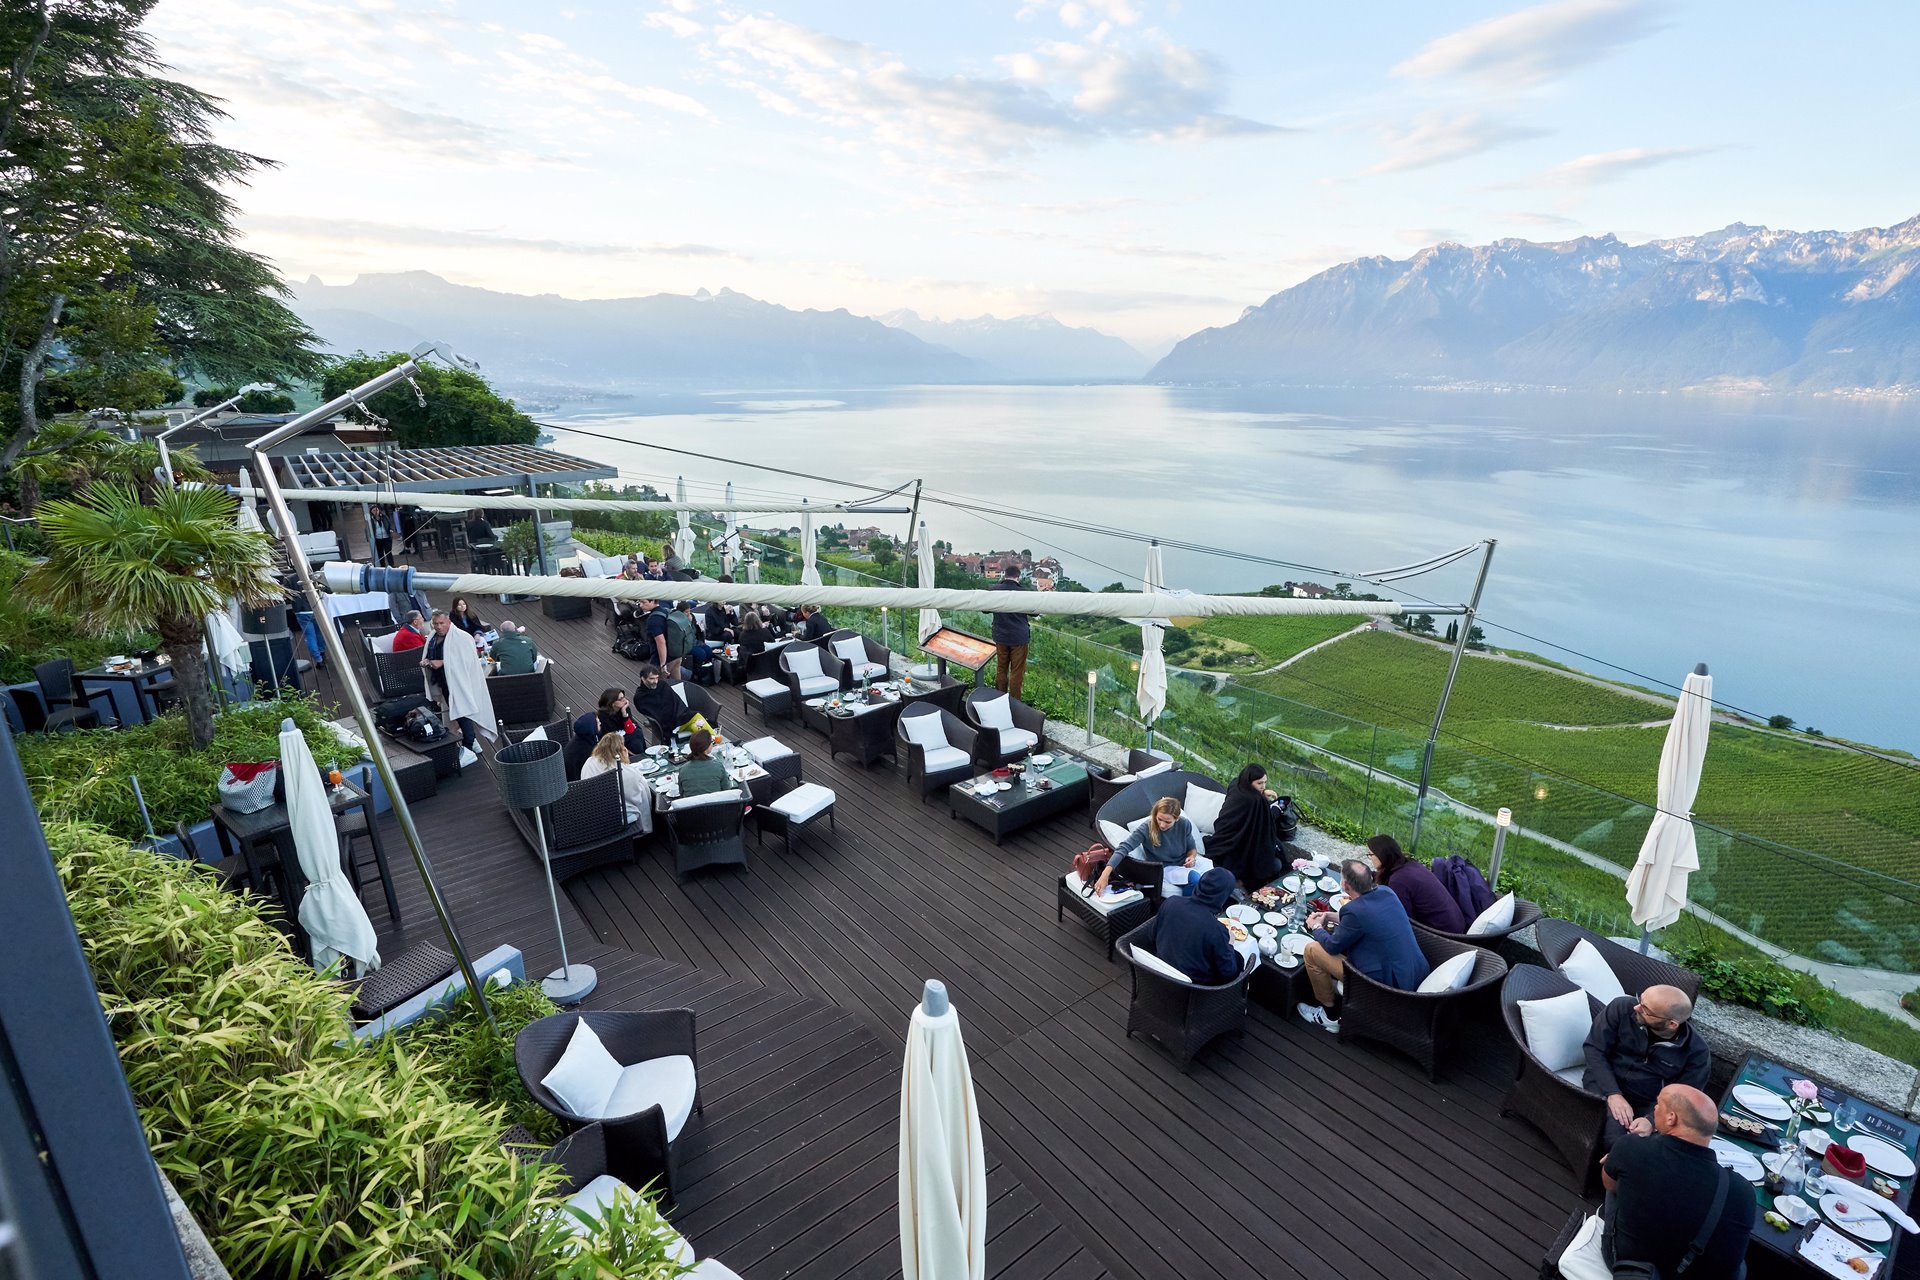 Terraza Le Deck en Chexbres Suiza a orilla del lago.  Foto cortesía Lexus Léman